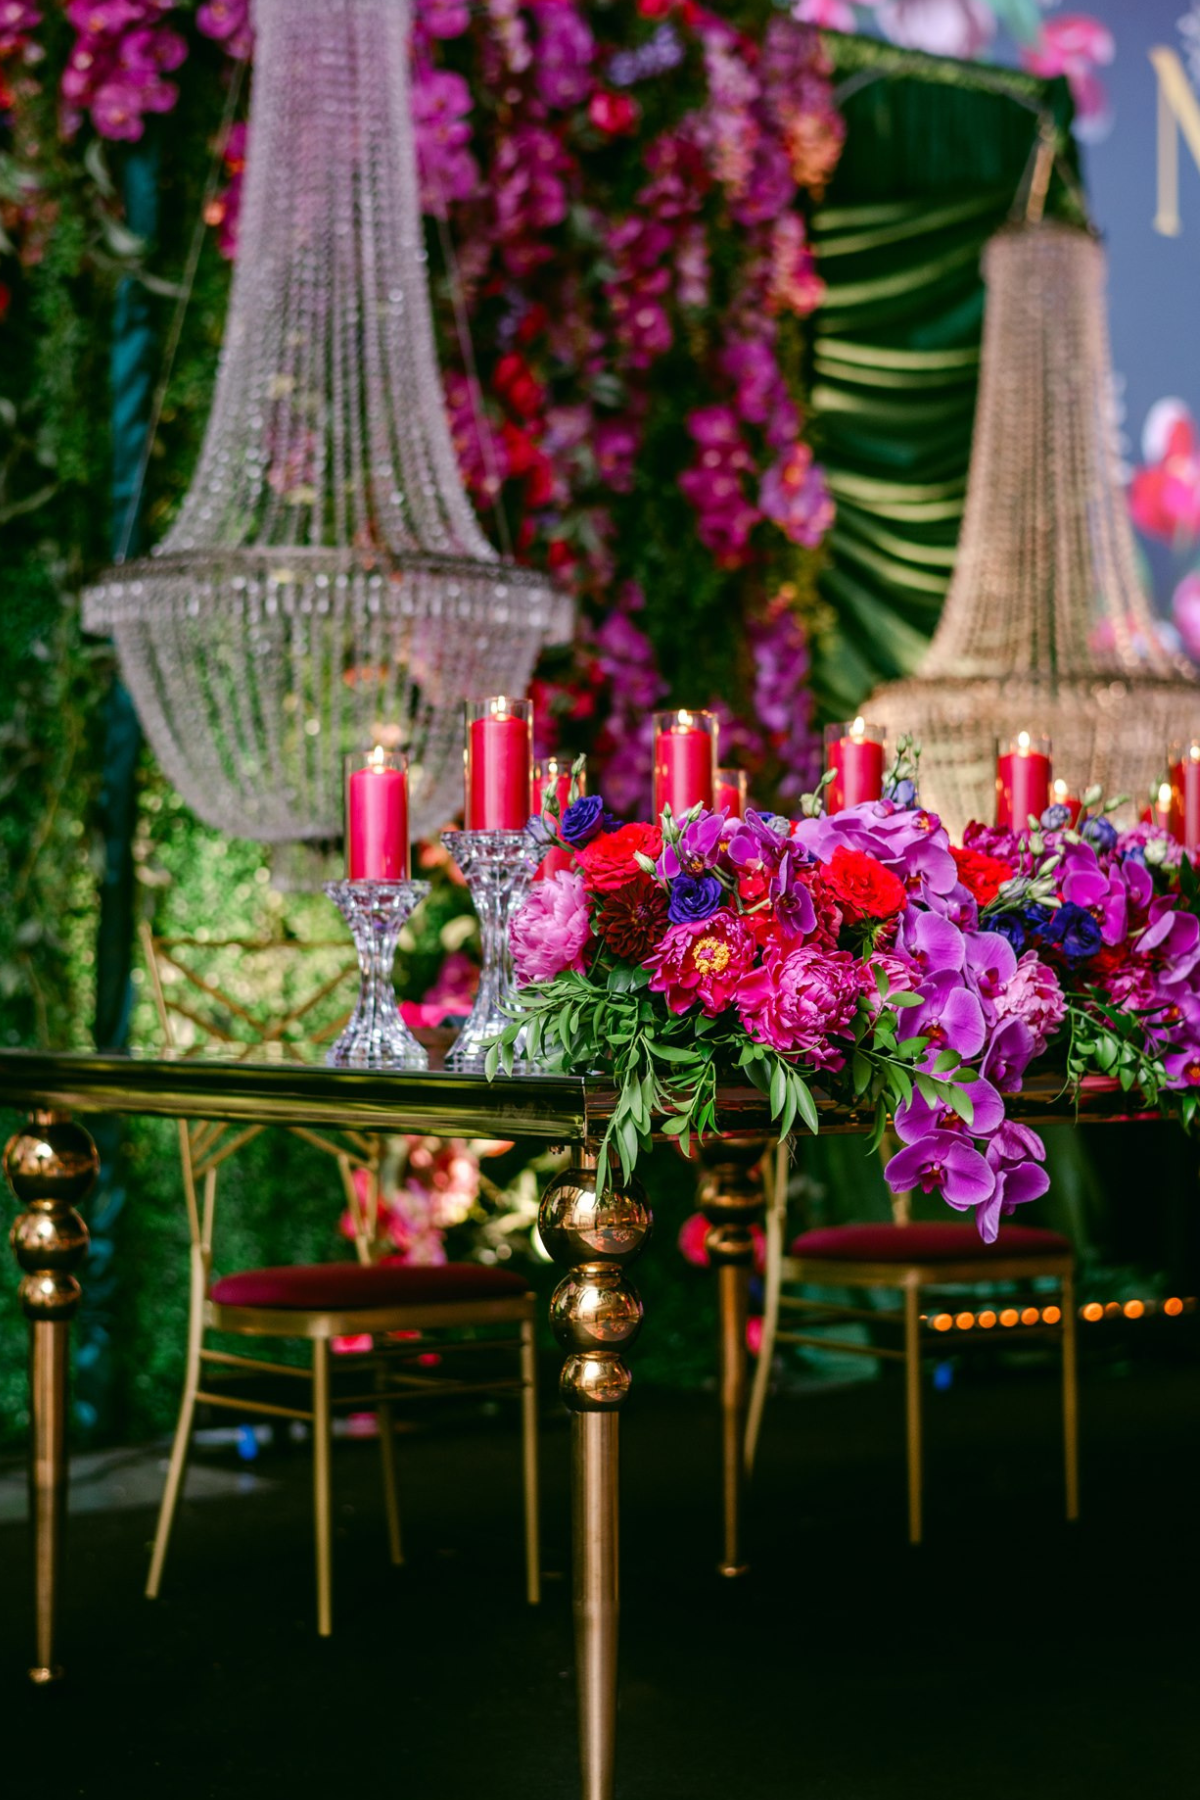 secret-garden-wedding-reception-greenery-pink-purple-gold-chandeliers-sweetheart